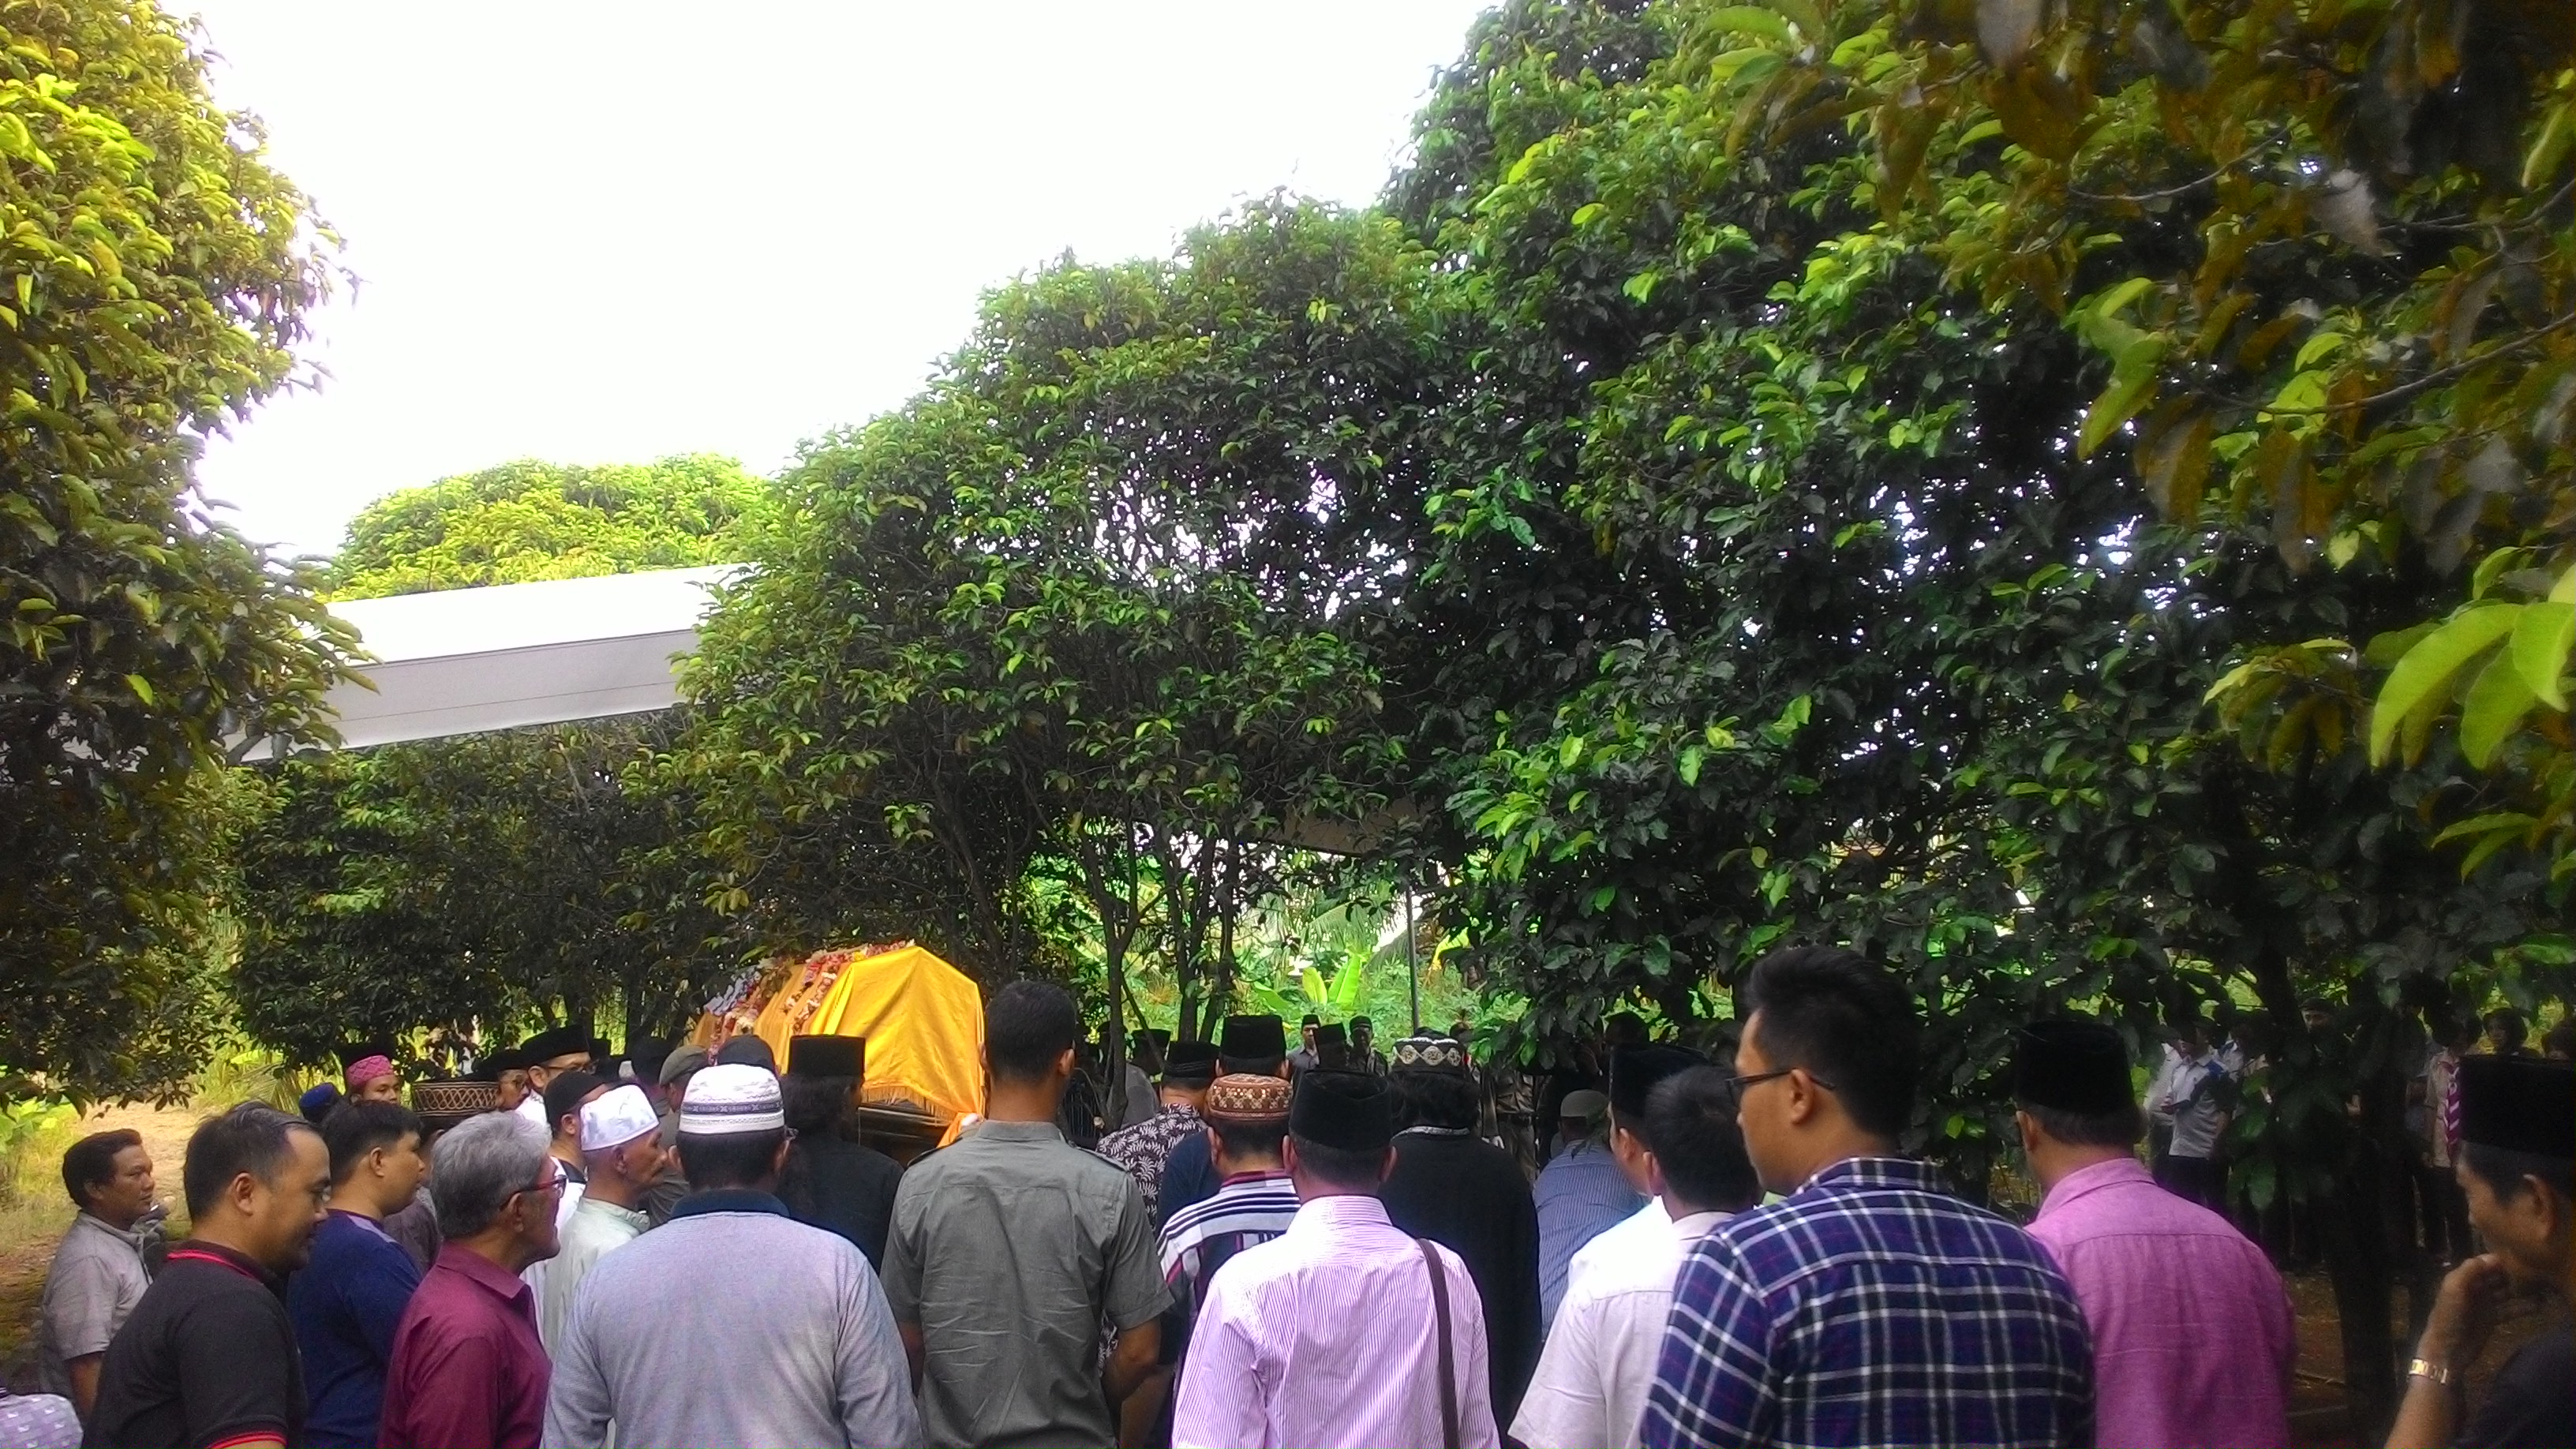 Ratusan pelayat turut mengantarkan Sjachrazad SP ke peristirahatan terakhirnya. (Lampungnews/Davit)